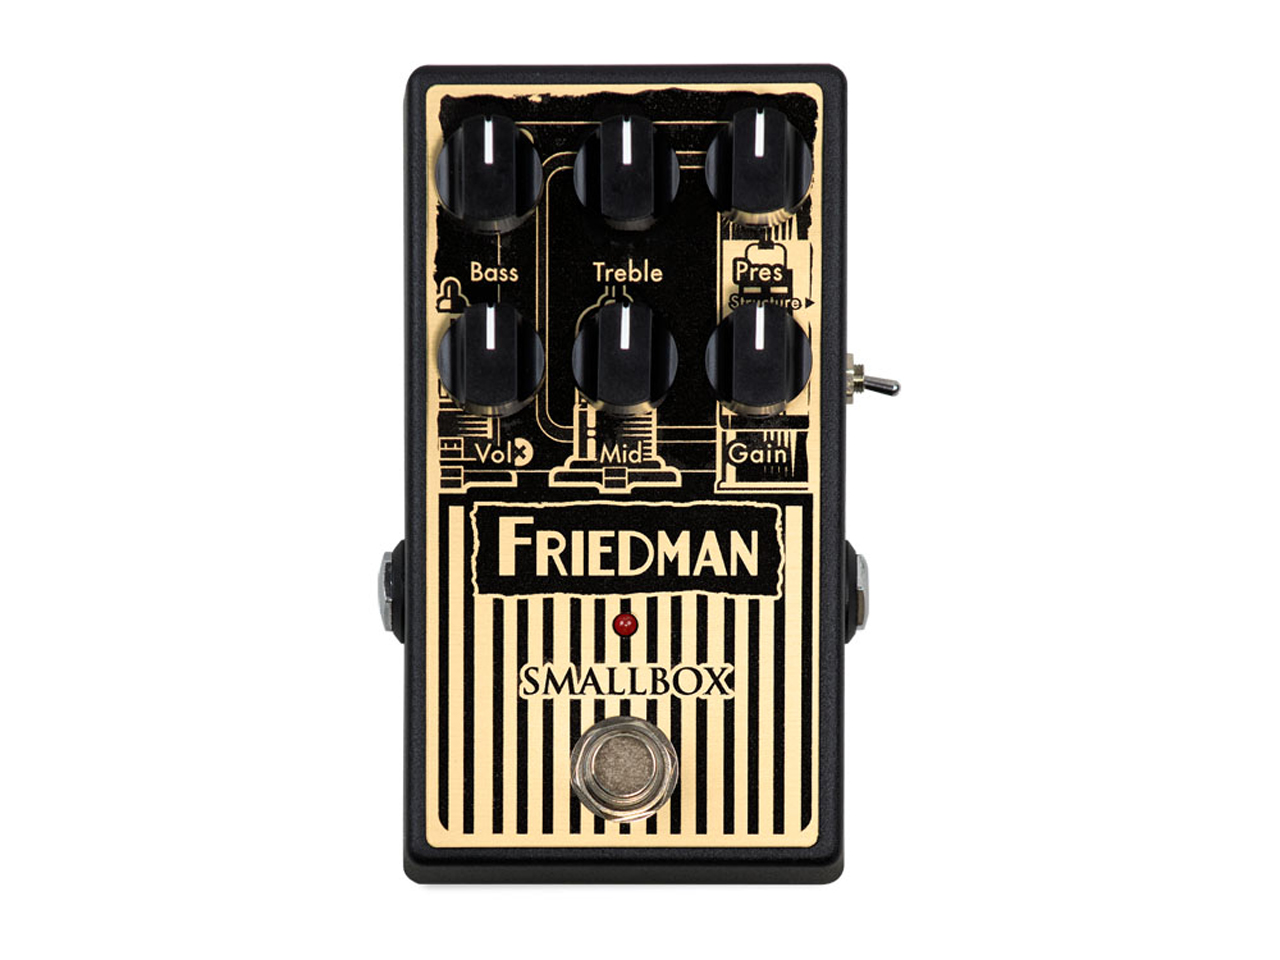 【お取寄せ商品】<br>Friedman Small Box Pedal<br>(オーバードライブ)(フリードマン)